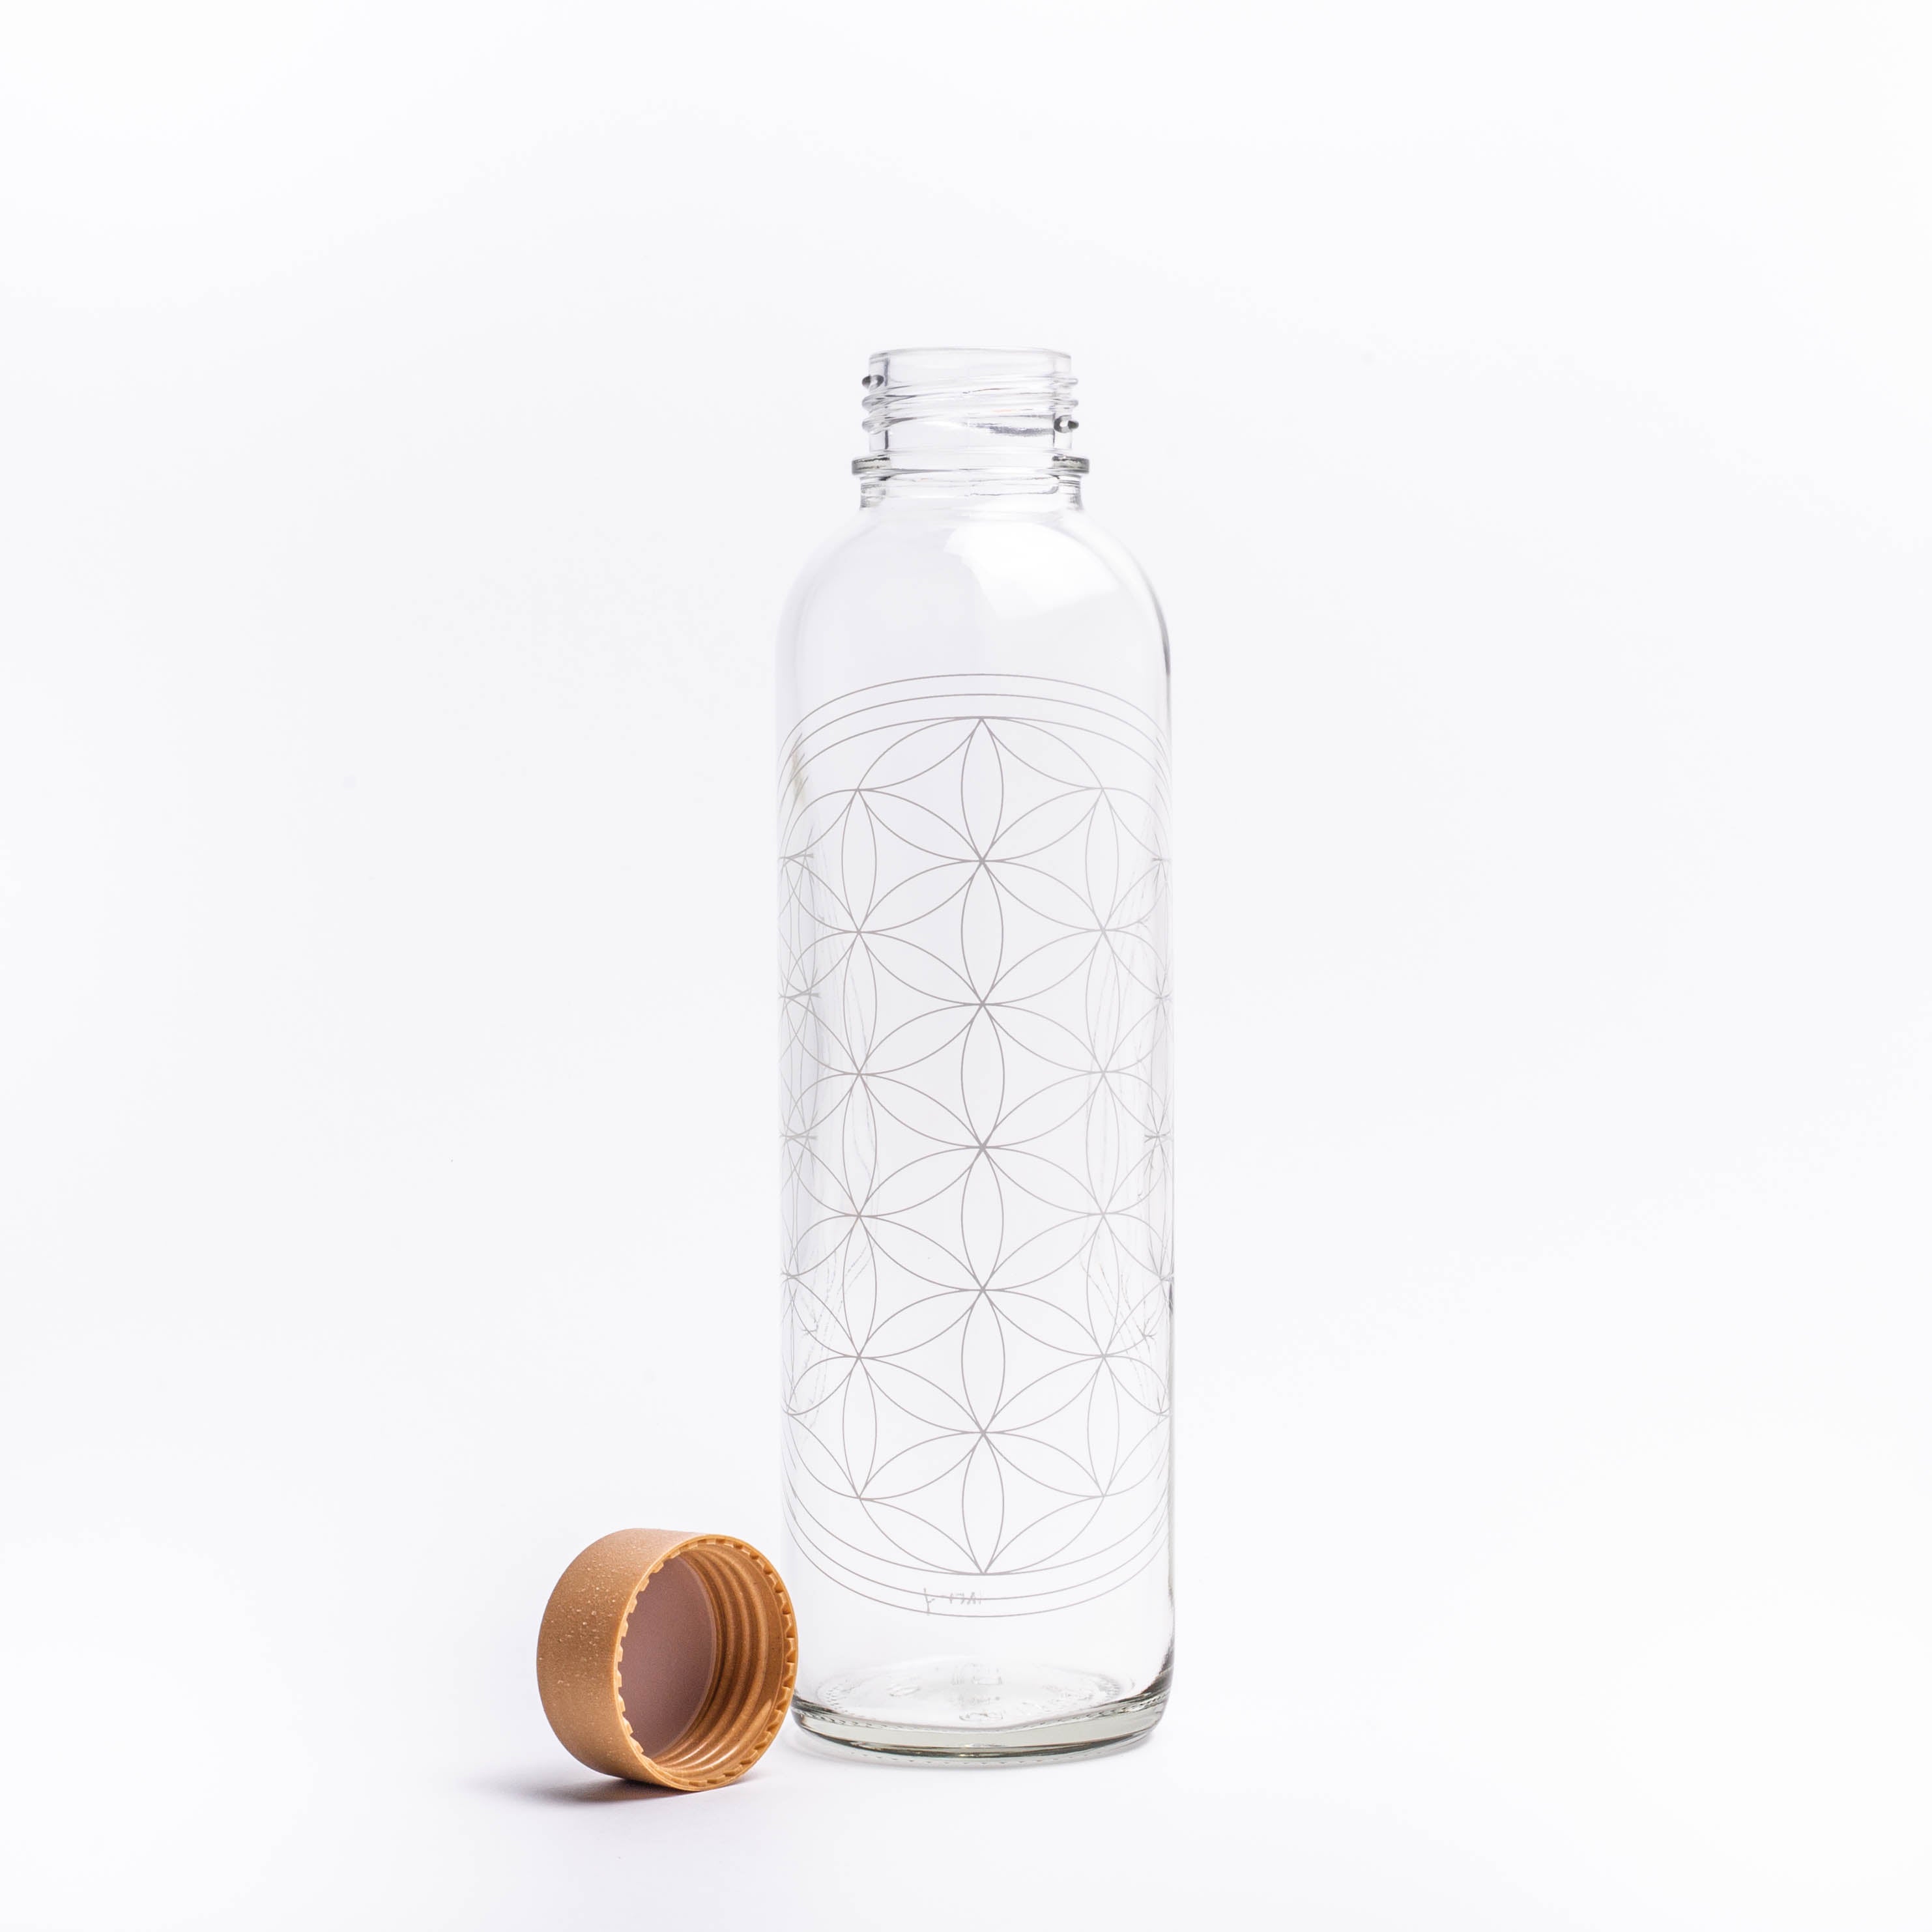 Glastrinkflasche mit weißer Blume des Lebens mit Verschluss links